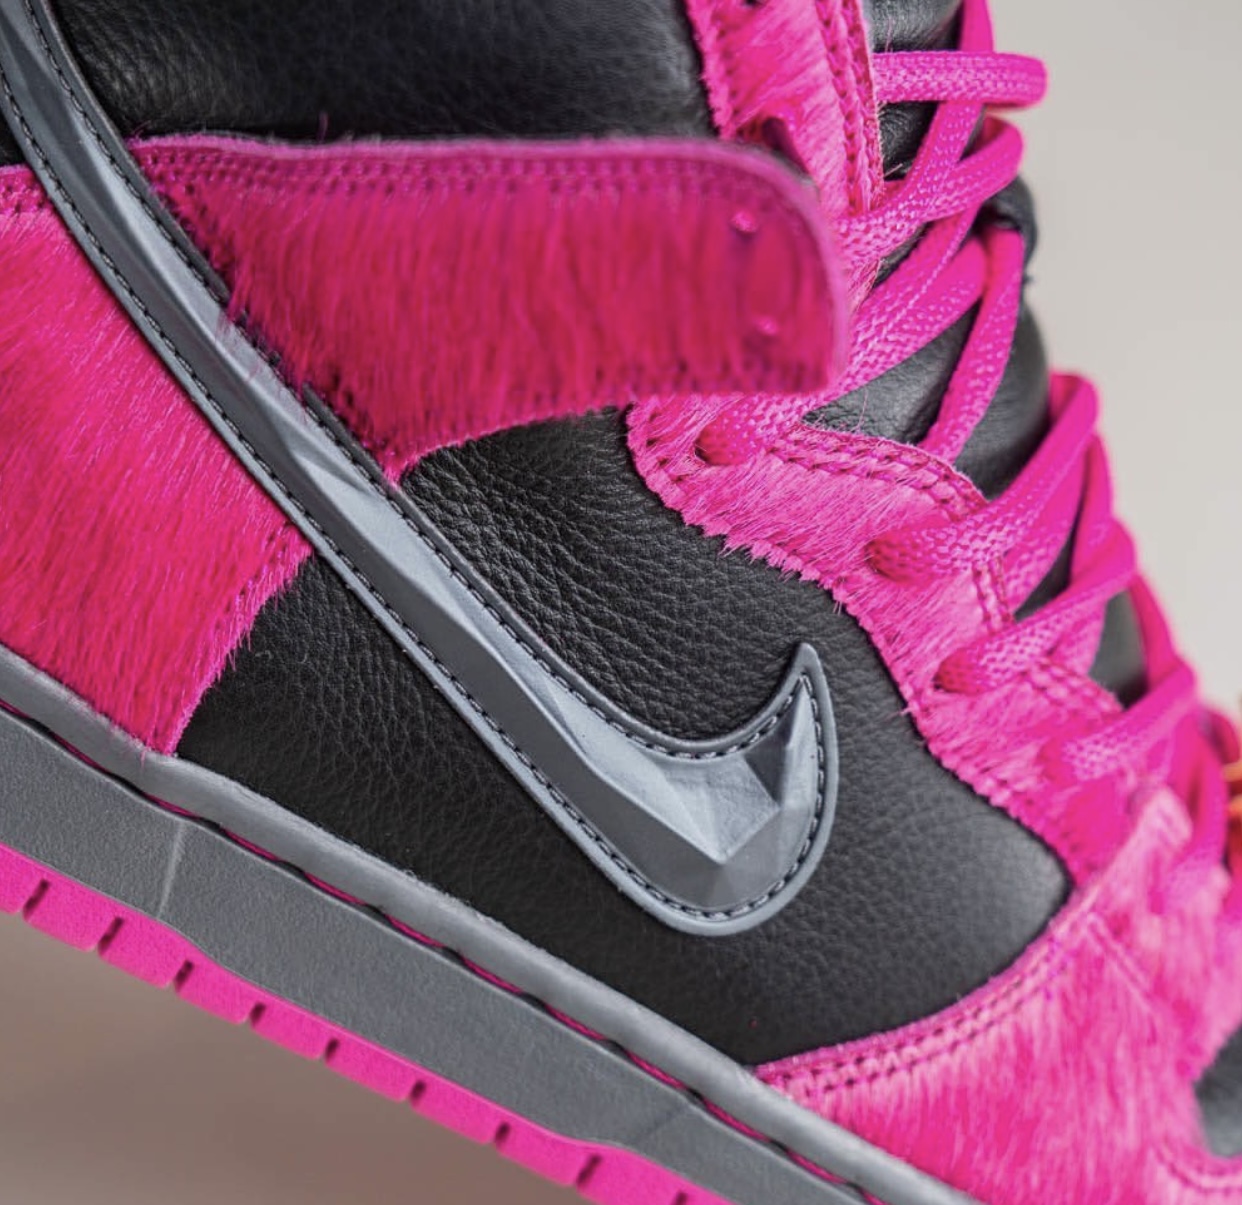 Nike Cortez SP Union LA Nike Jordan Jumpman Sorte shorts DX4356-600 Release Date On-Feet Swoosh